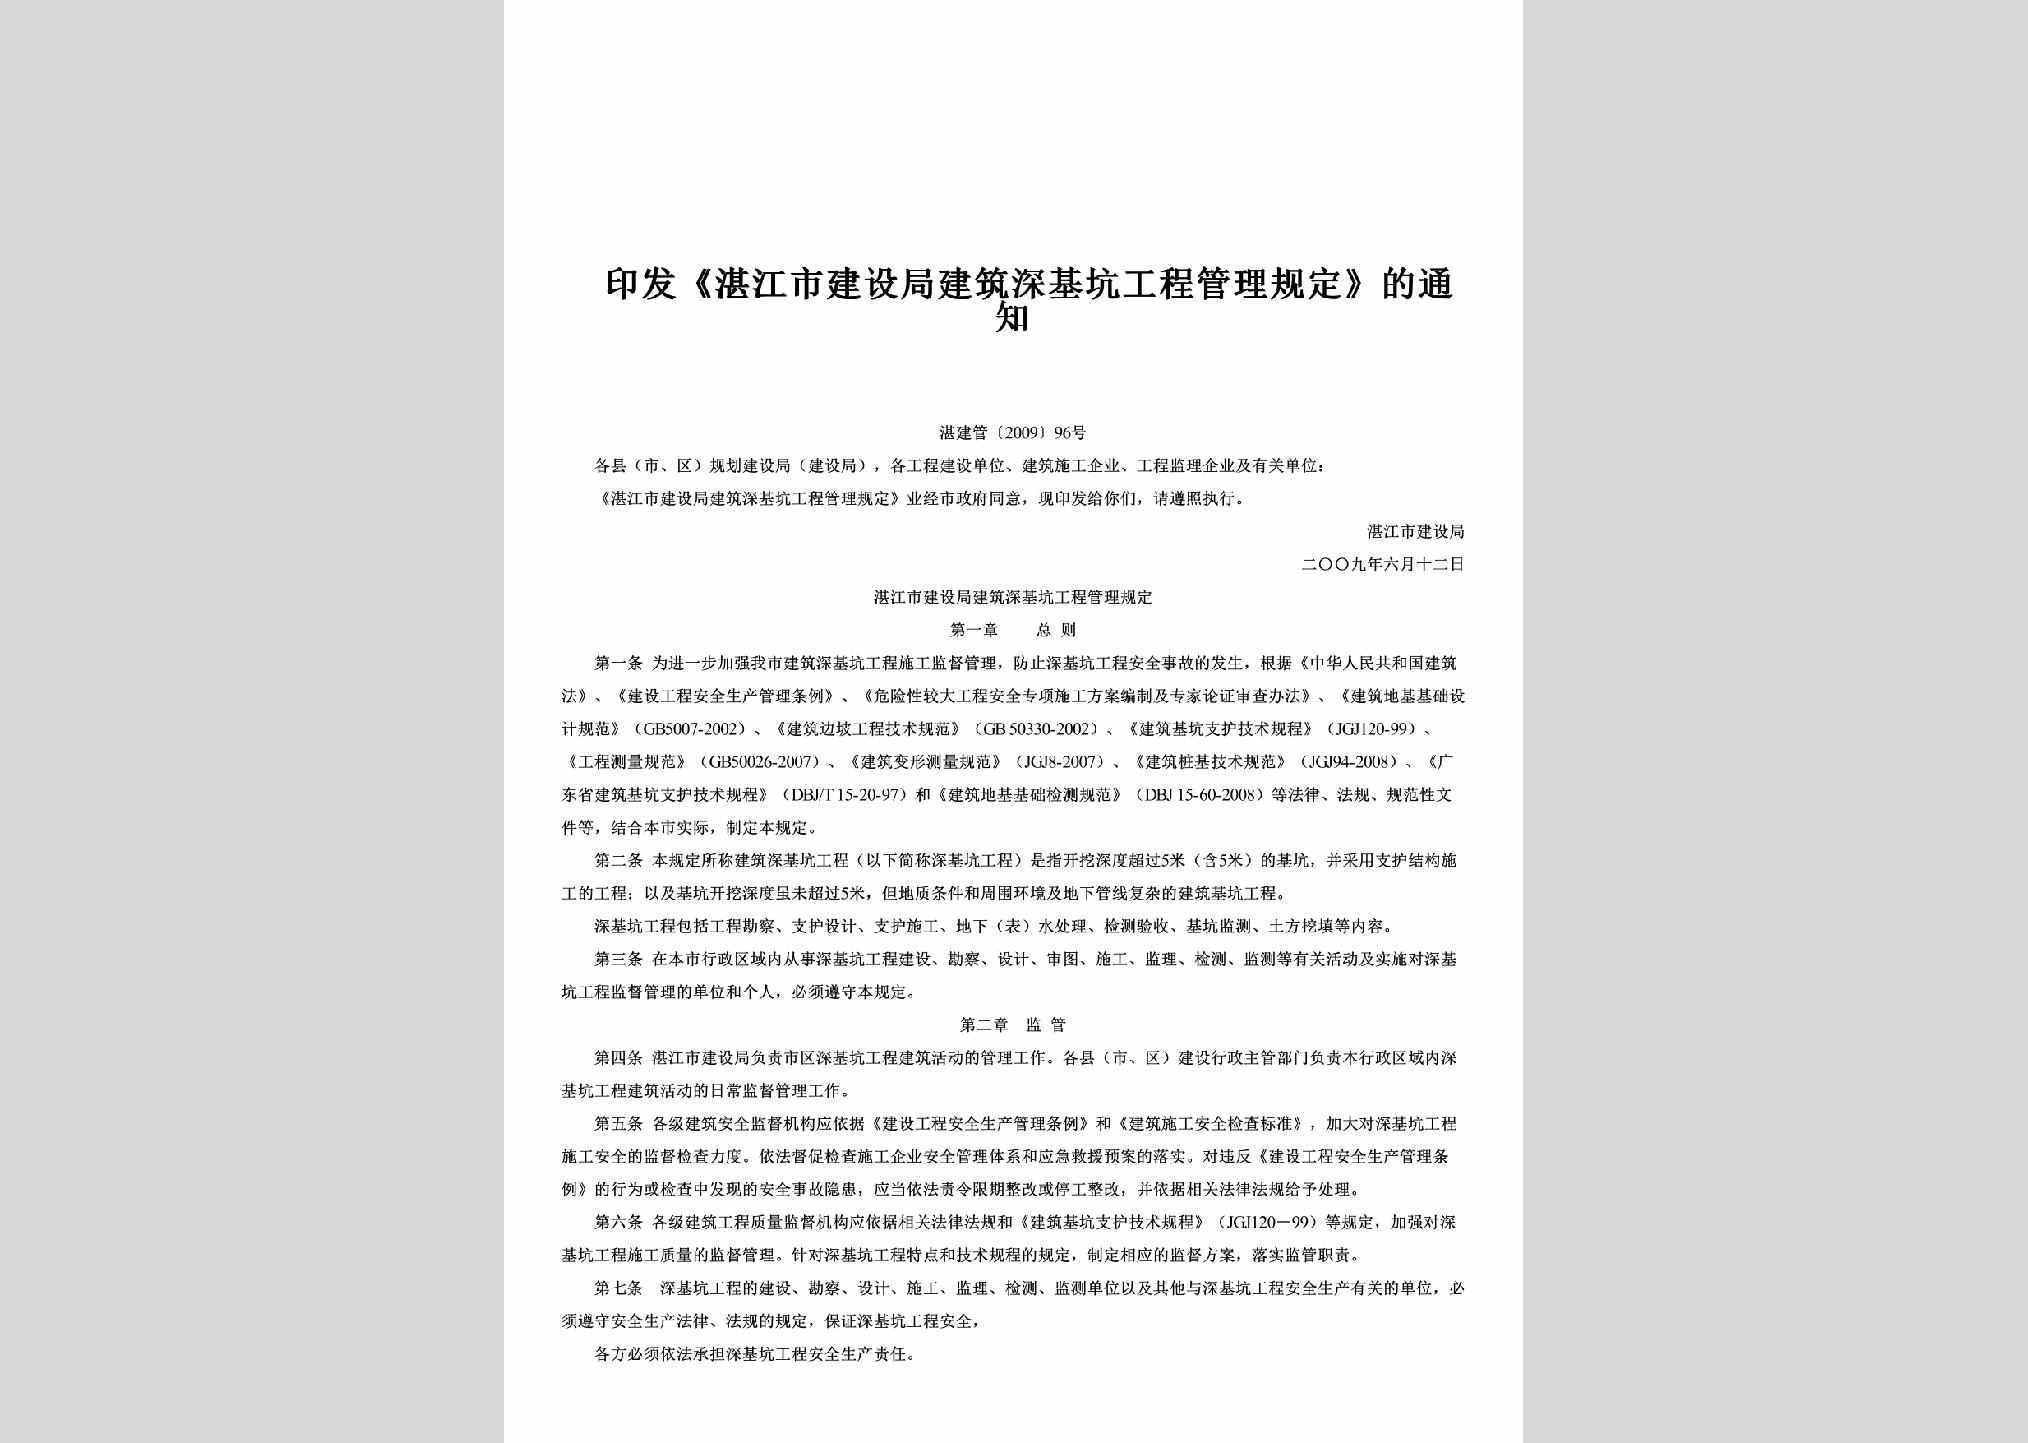 湛建管[2009]96号：印发《湛江市建设局建筑深基坑工程管理规定》的通知